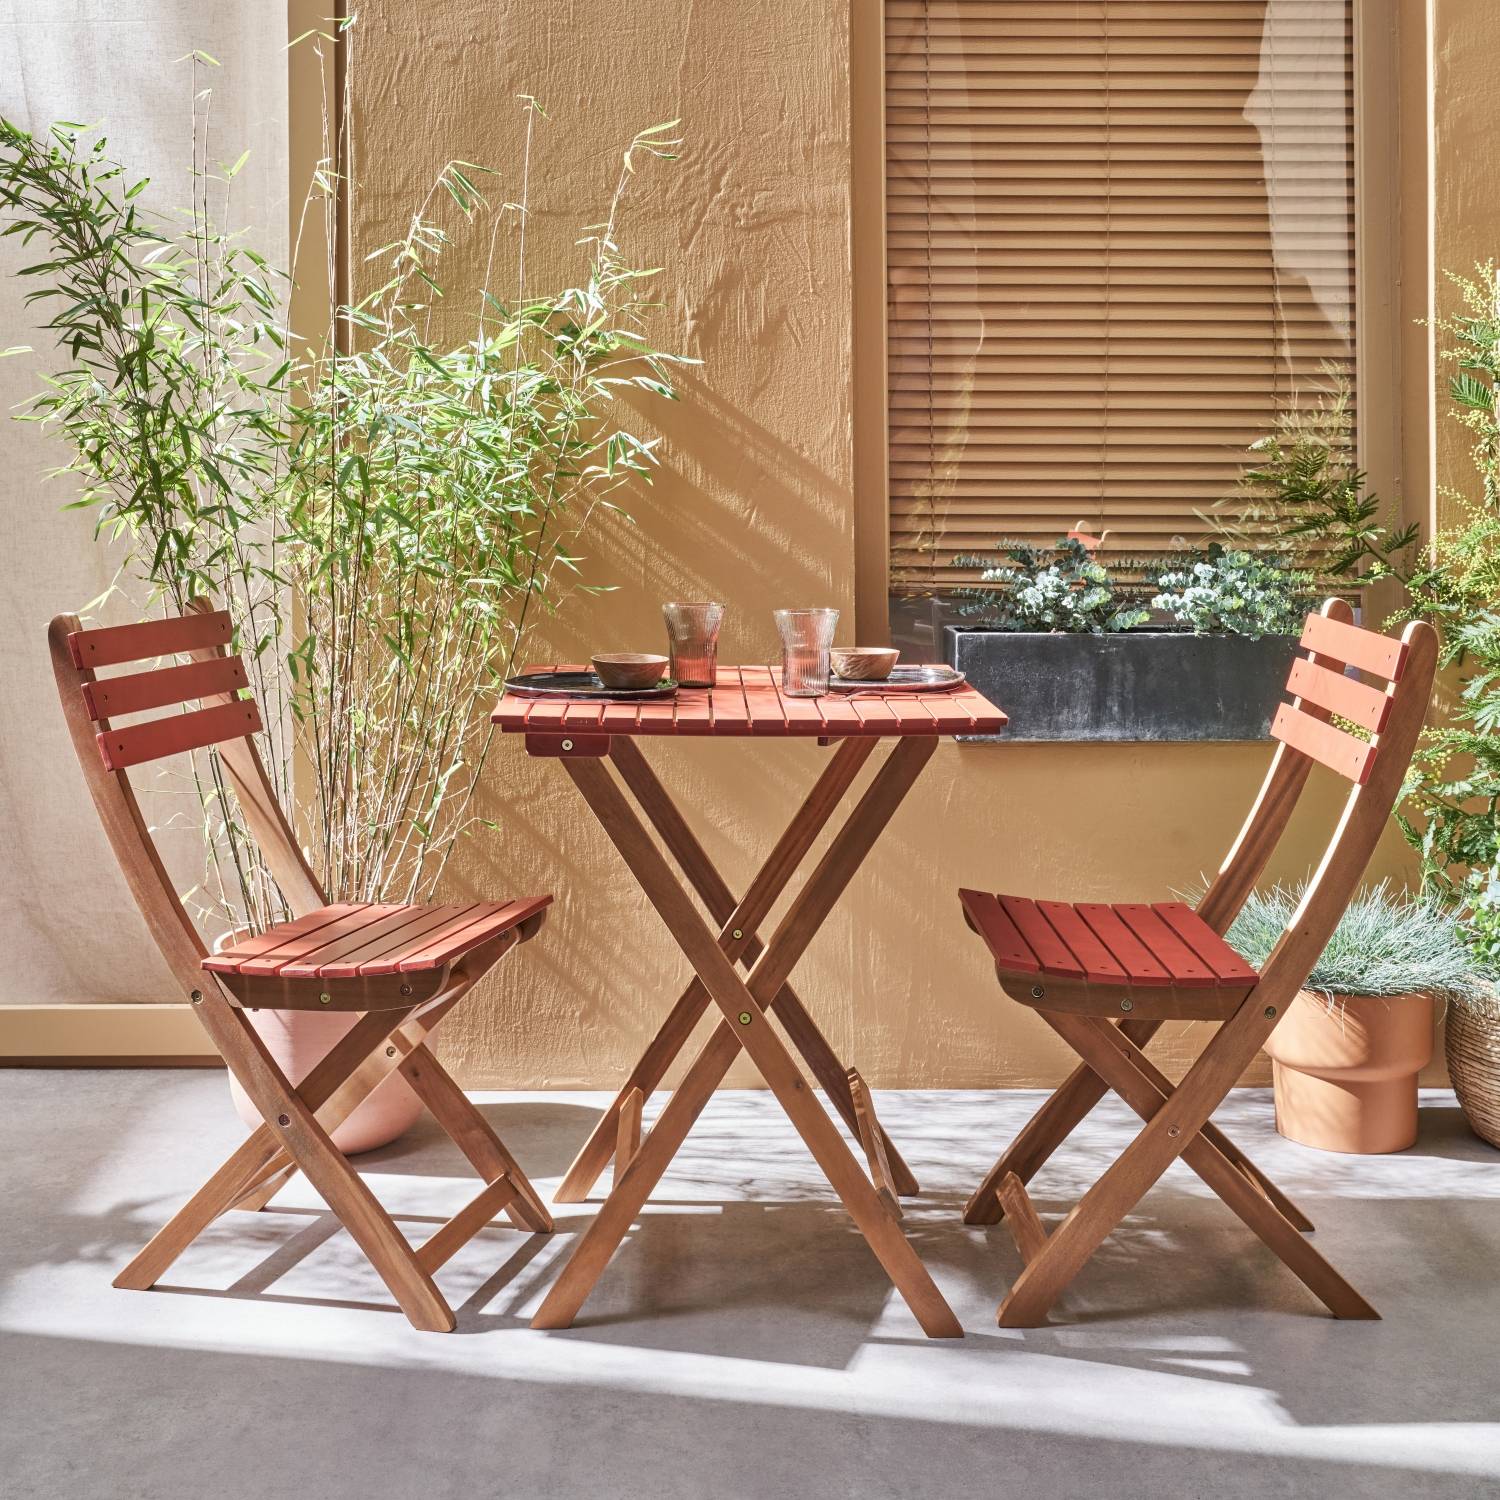 Conjunto de jardín de madera Bistro 60x60cm - Barcelona - terracota, mesa plegable cuadrada bicolor con 2 sillas plegables, acacia | sweeek